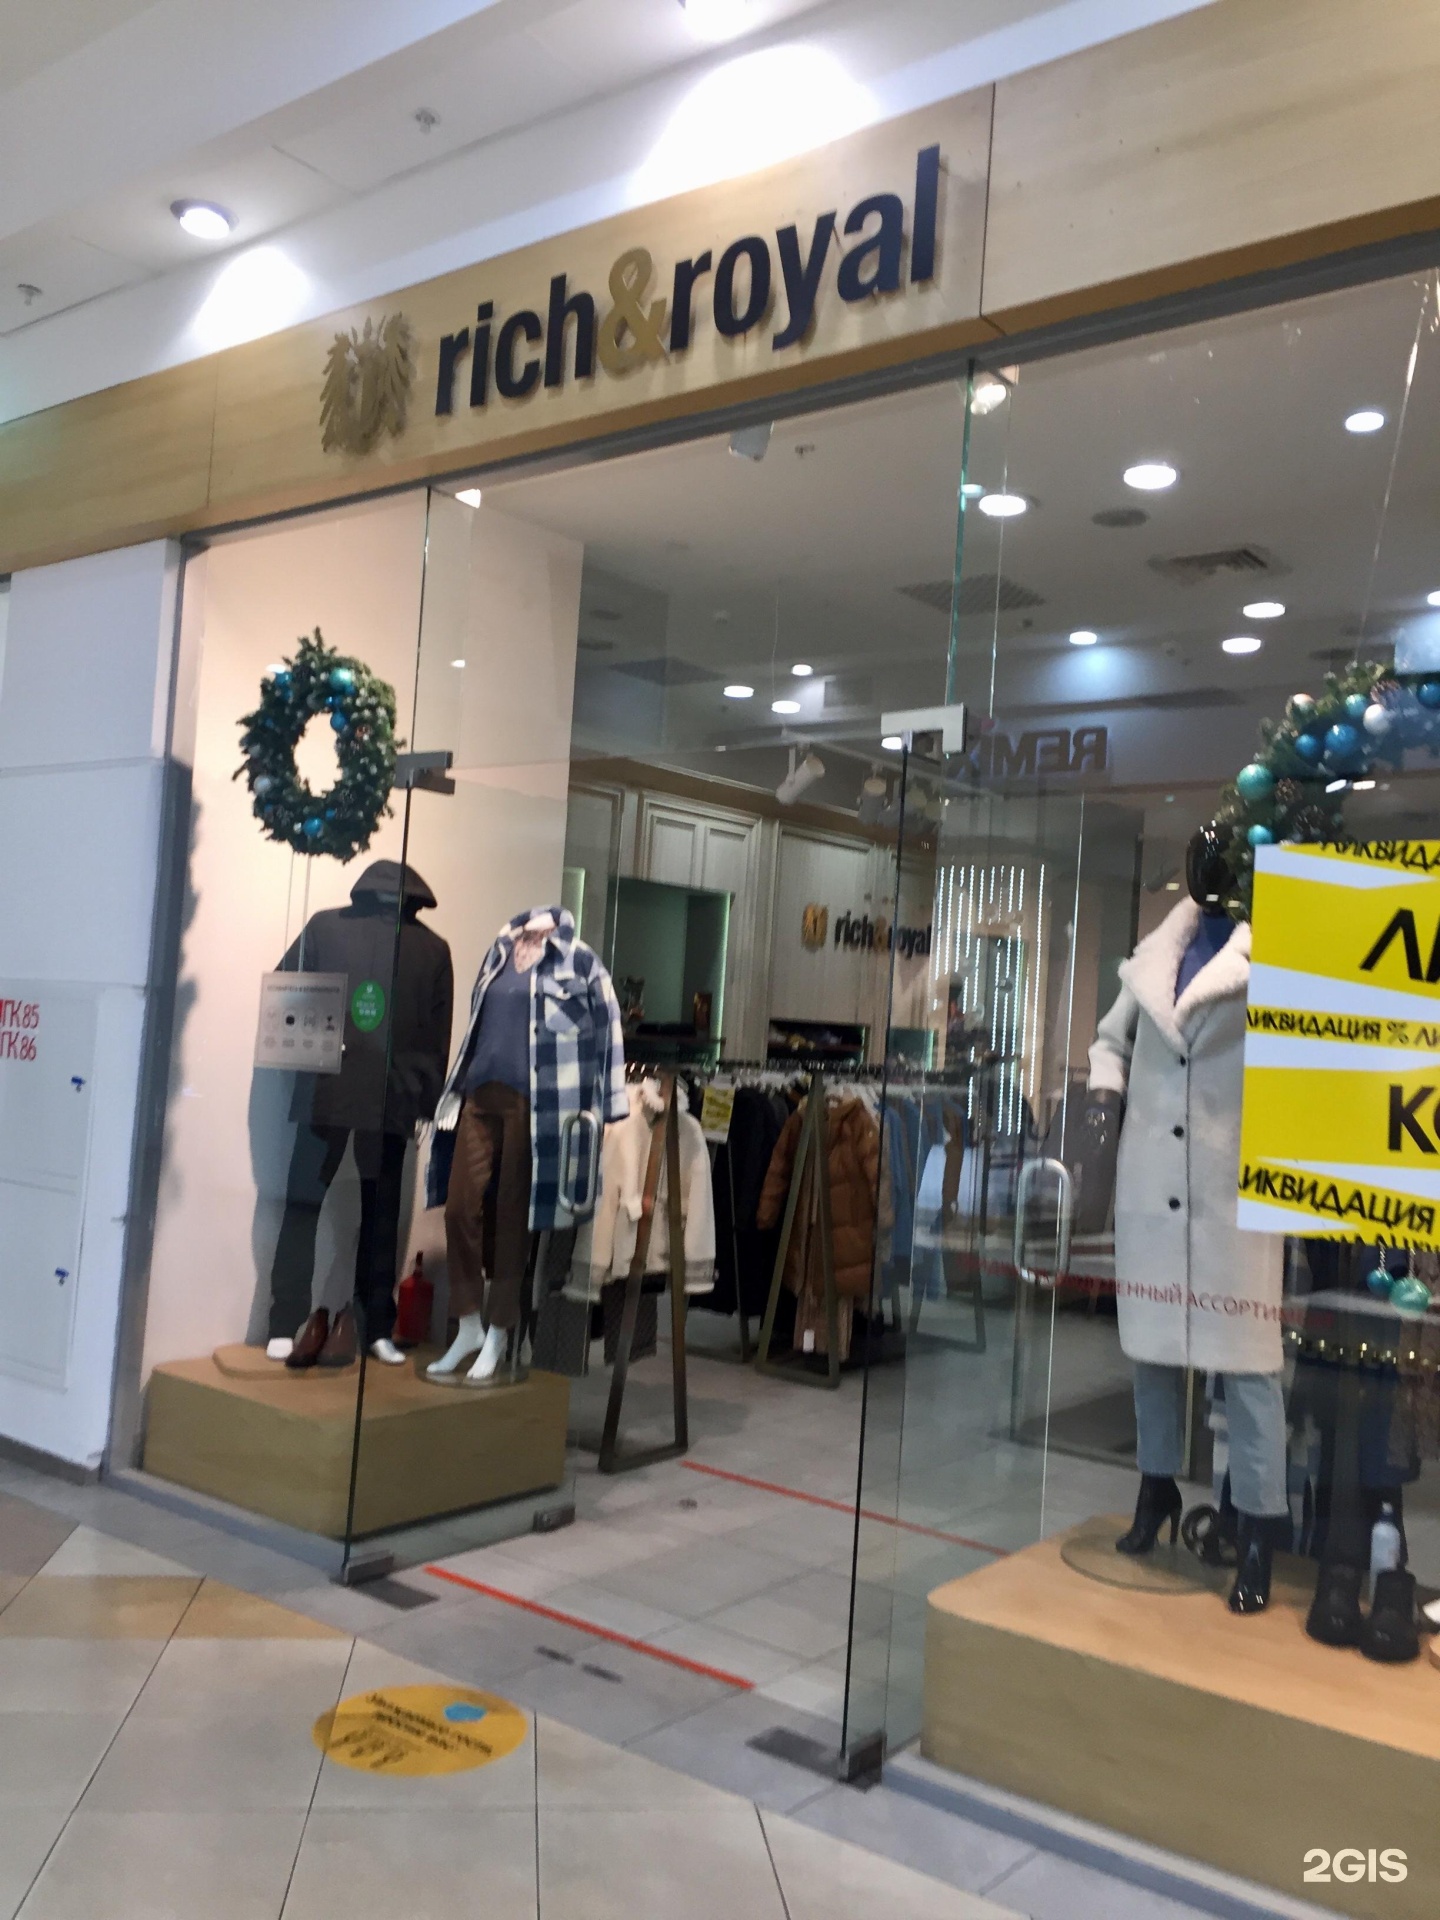 Royal boutique. Рич Роял одежда. Rich and Royal магазин. Королевский бутик. Фирмы одежды Rich.